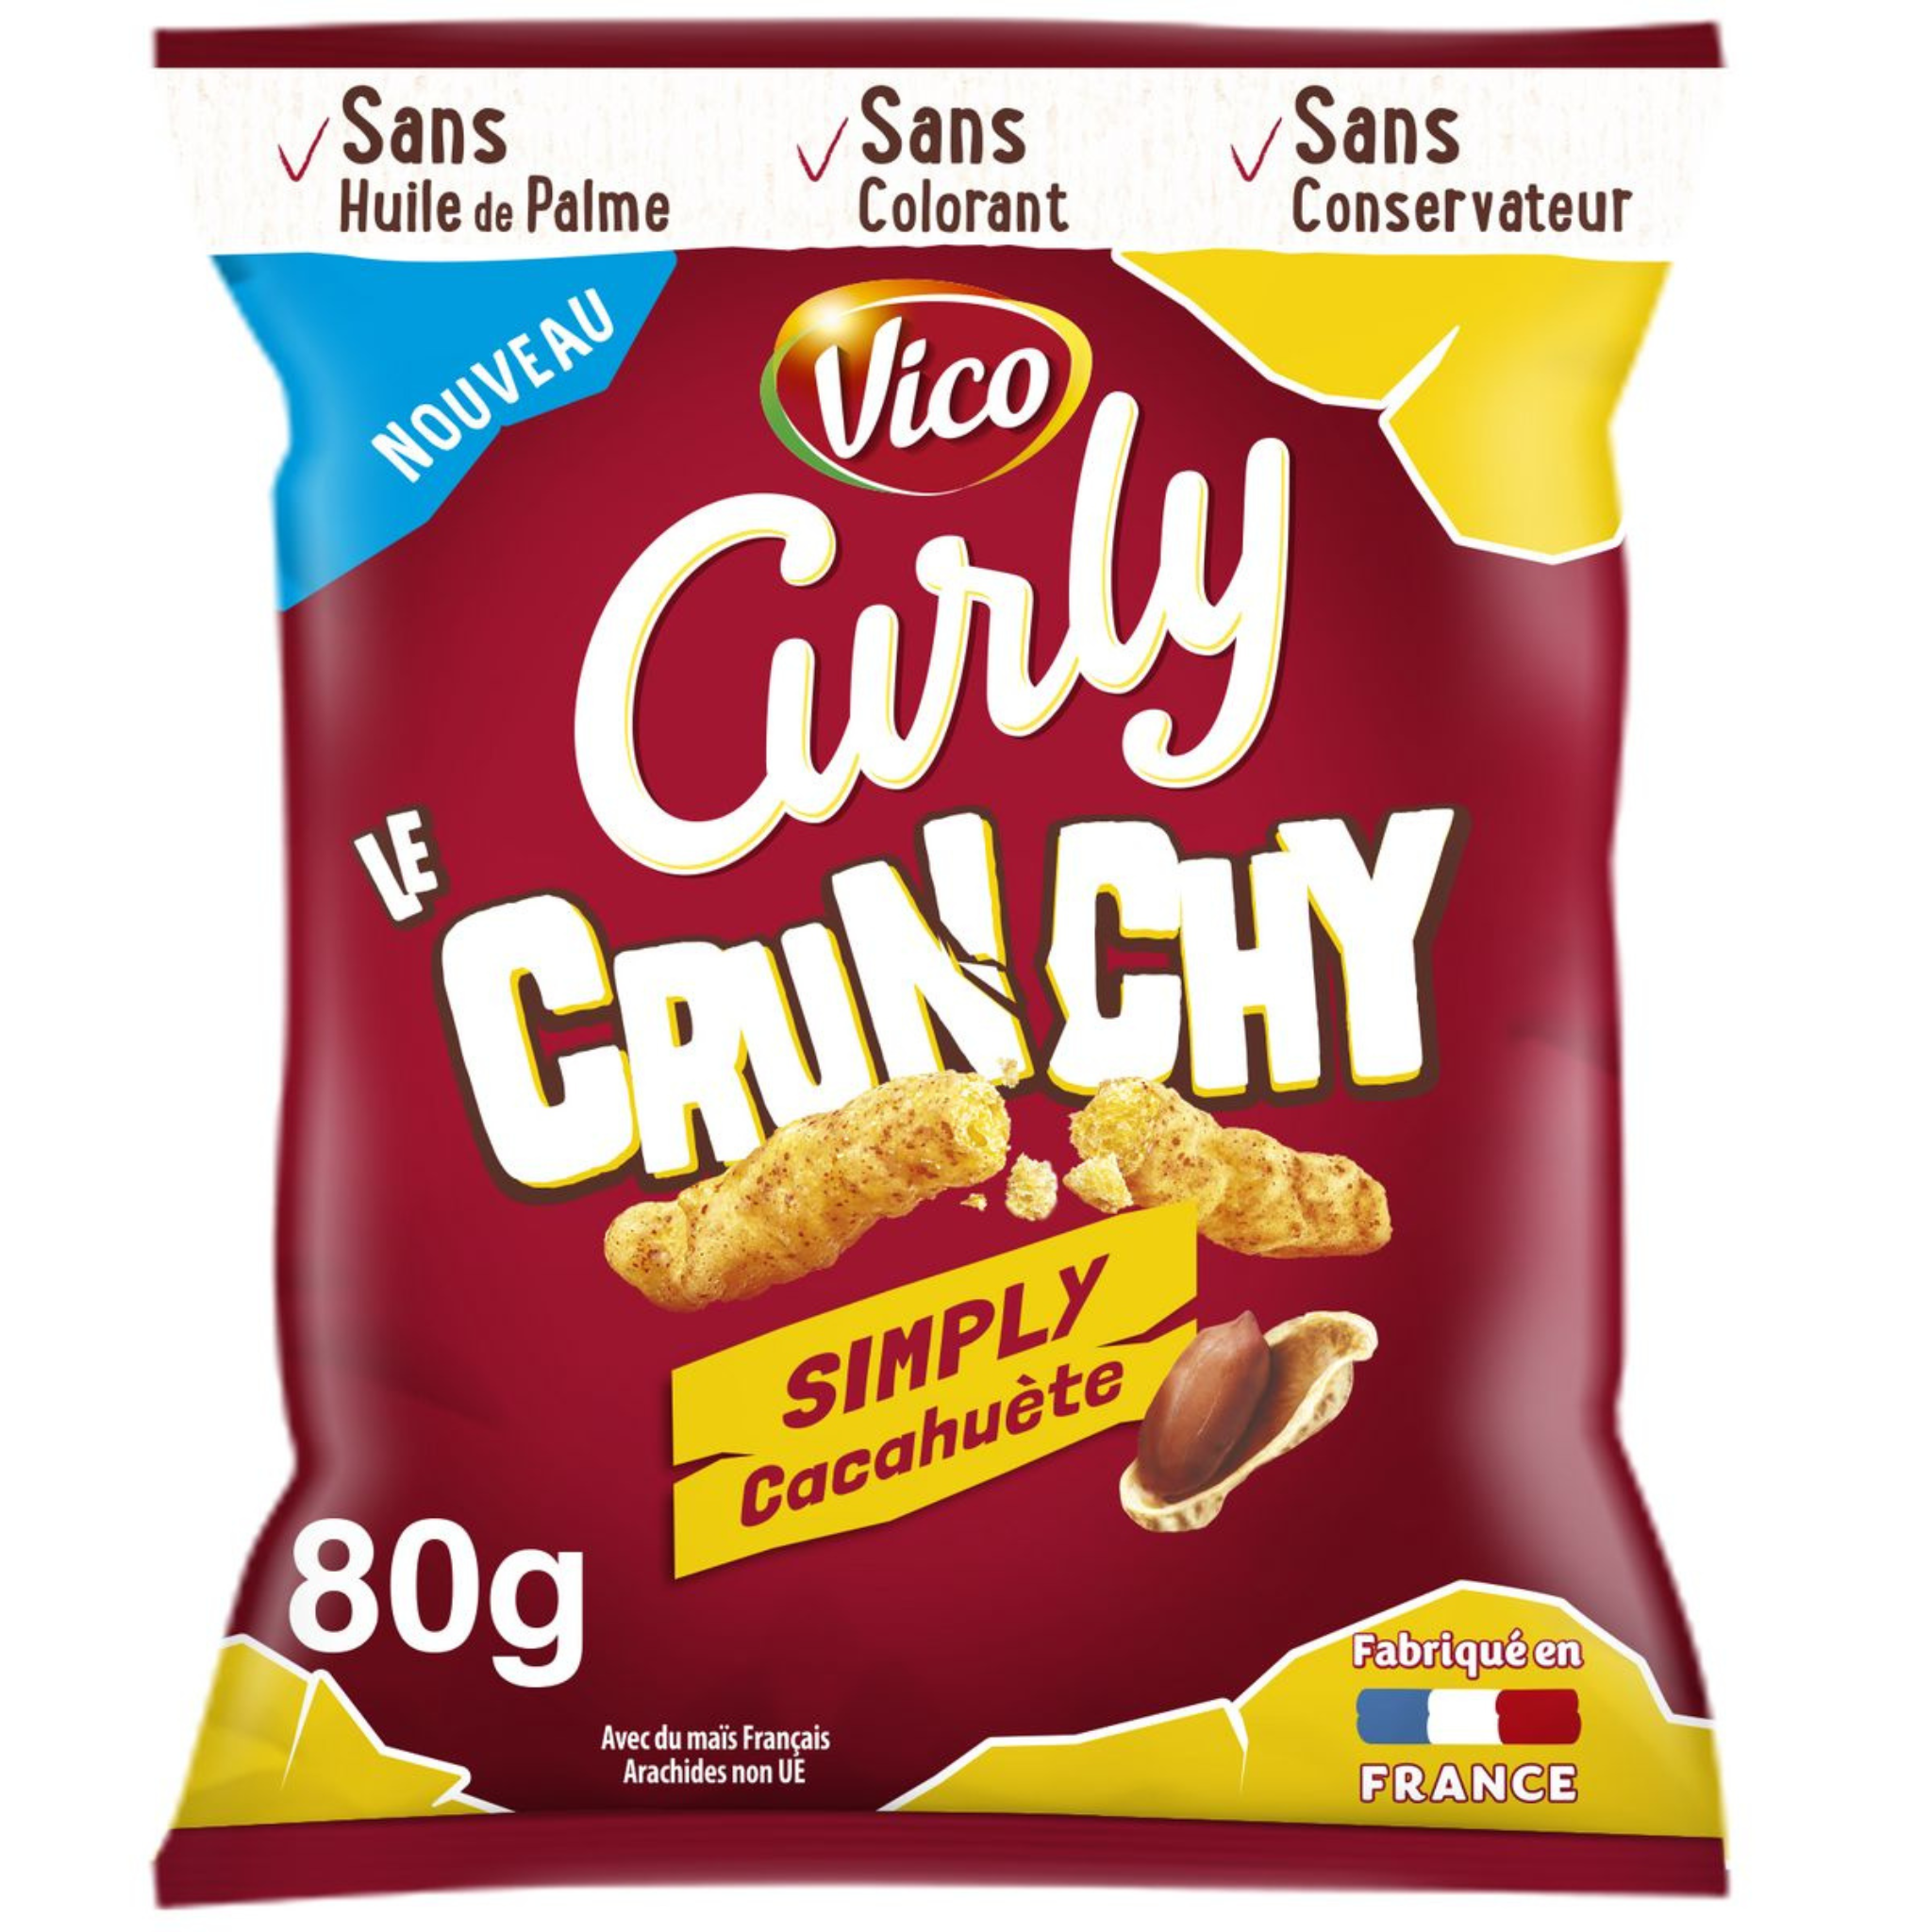 Curly lance Les Crunchy : Les biscuits les plus vrillés de la marque, à la texture très croustillante et au goût inimitable de cacahuète Curly, associé à des saveurs intenses …pour une expérience irrésistiblement craquante